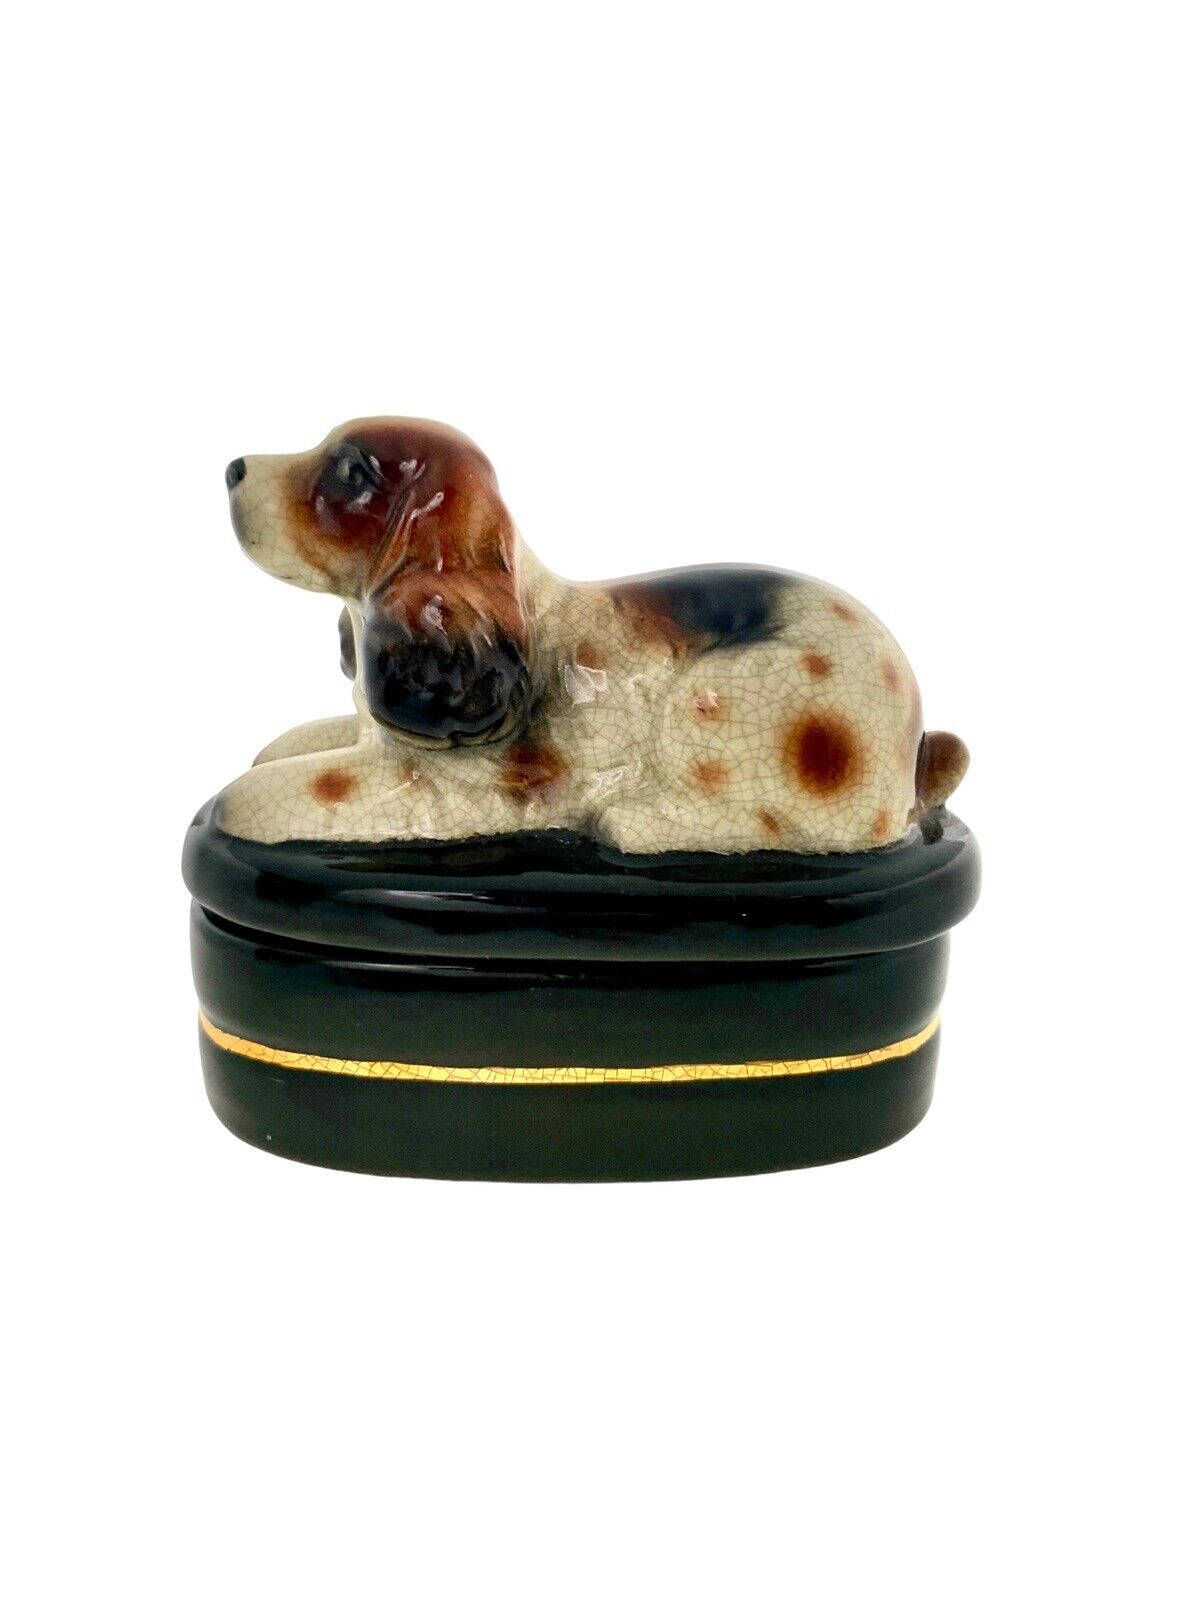 Dog Design on Lidded Case Spaniel Trinket Box Vintage Decor Gift